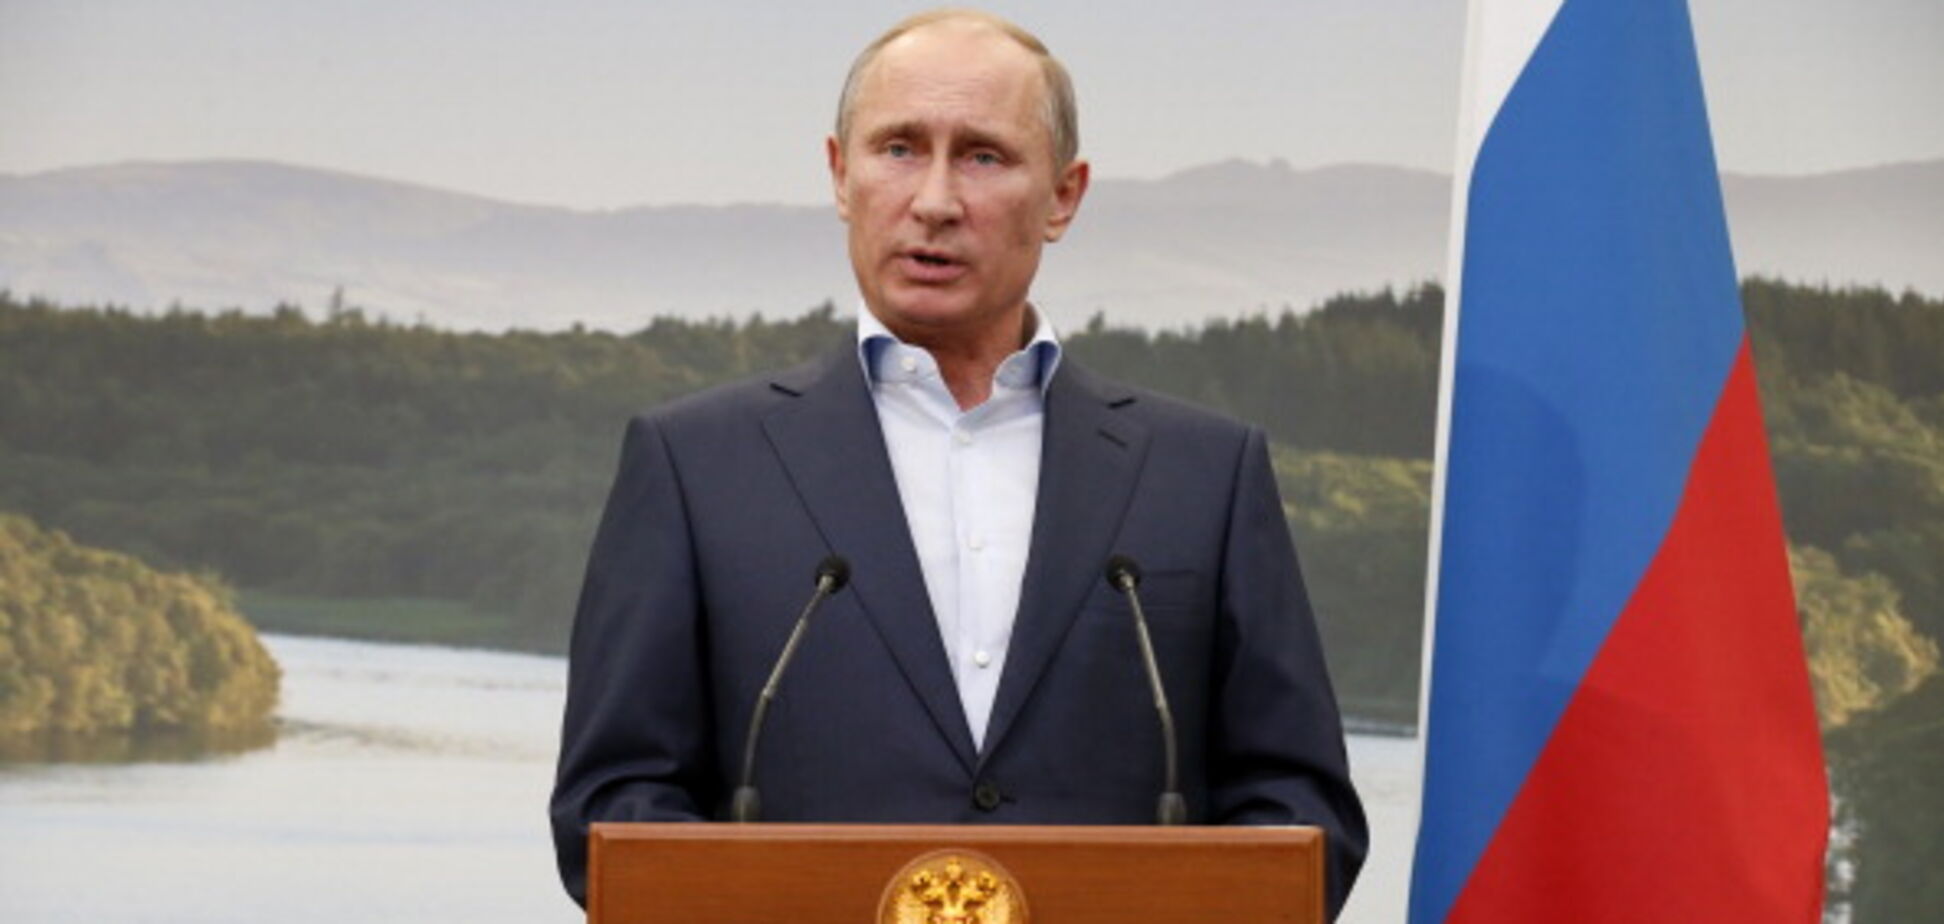 Тягне на дно весь світ: дипломат розповів, як Росія 'йде в нікуди'